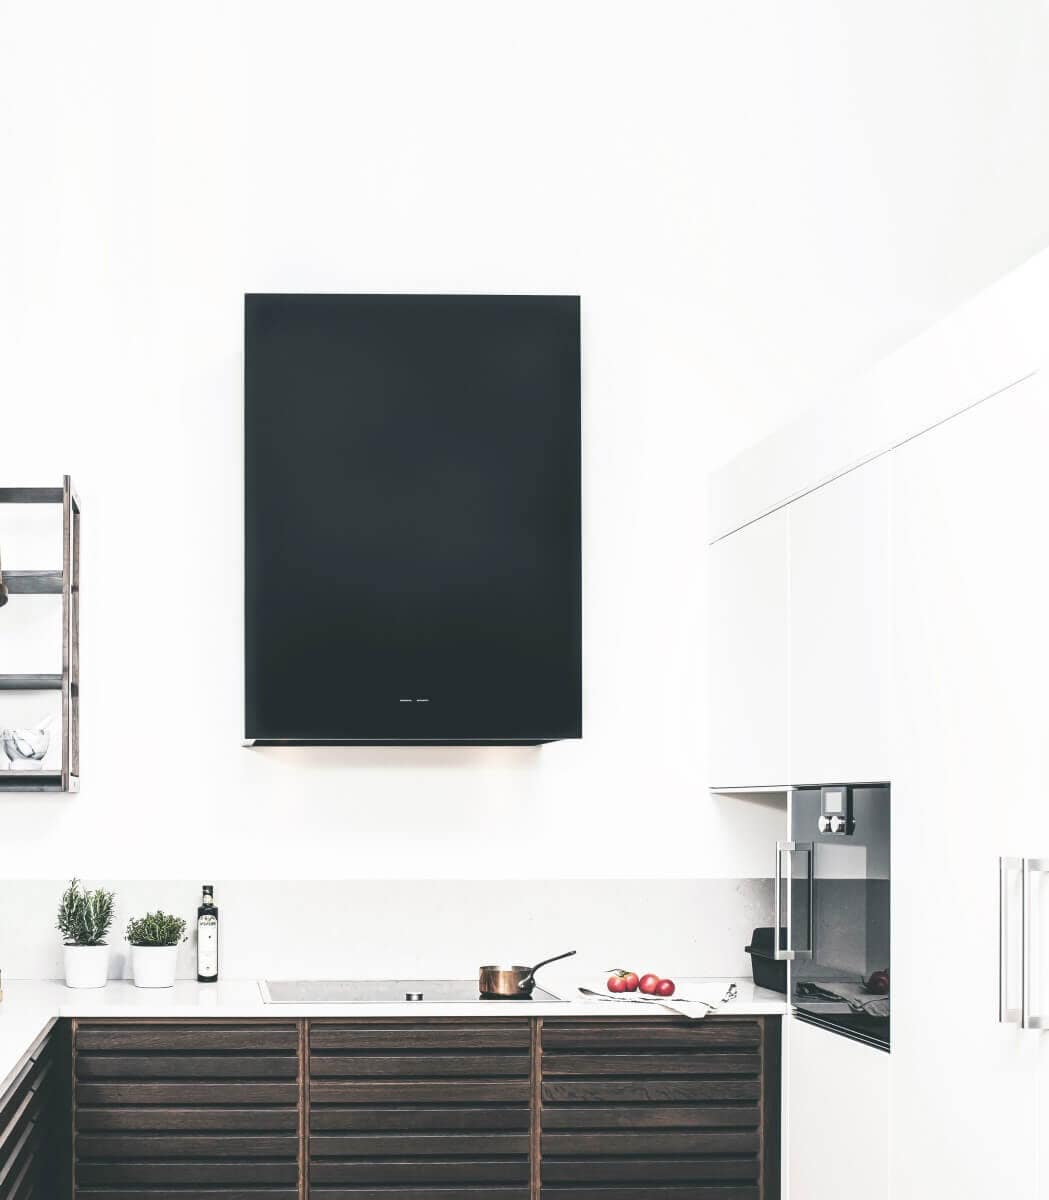 Vägghängda köksfläkten Box i svart utförande i en minimalistisk köksmiljö som skapar konstrast mellan vitt och svart.